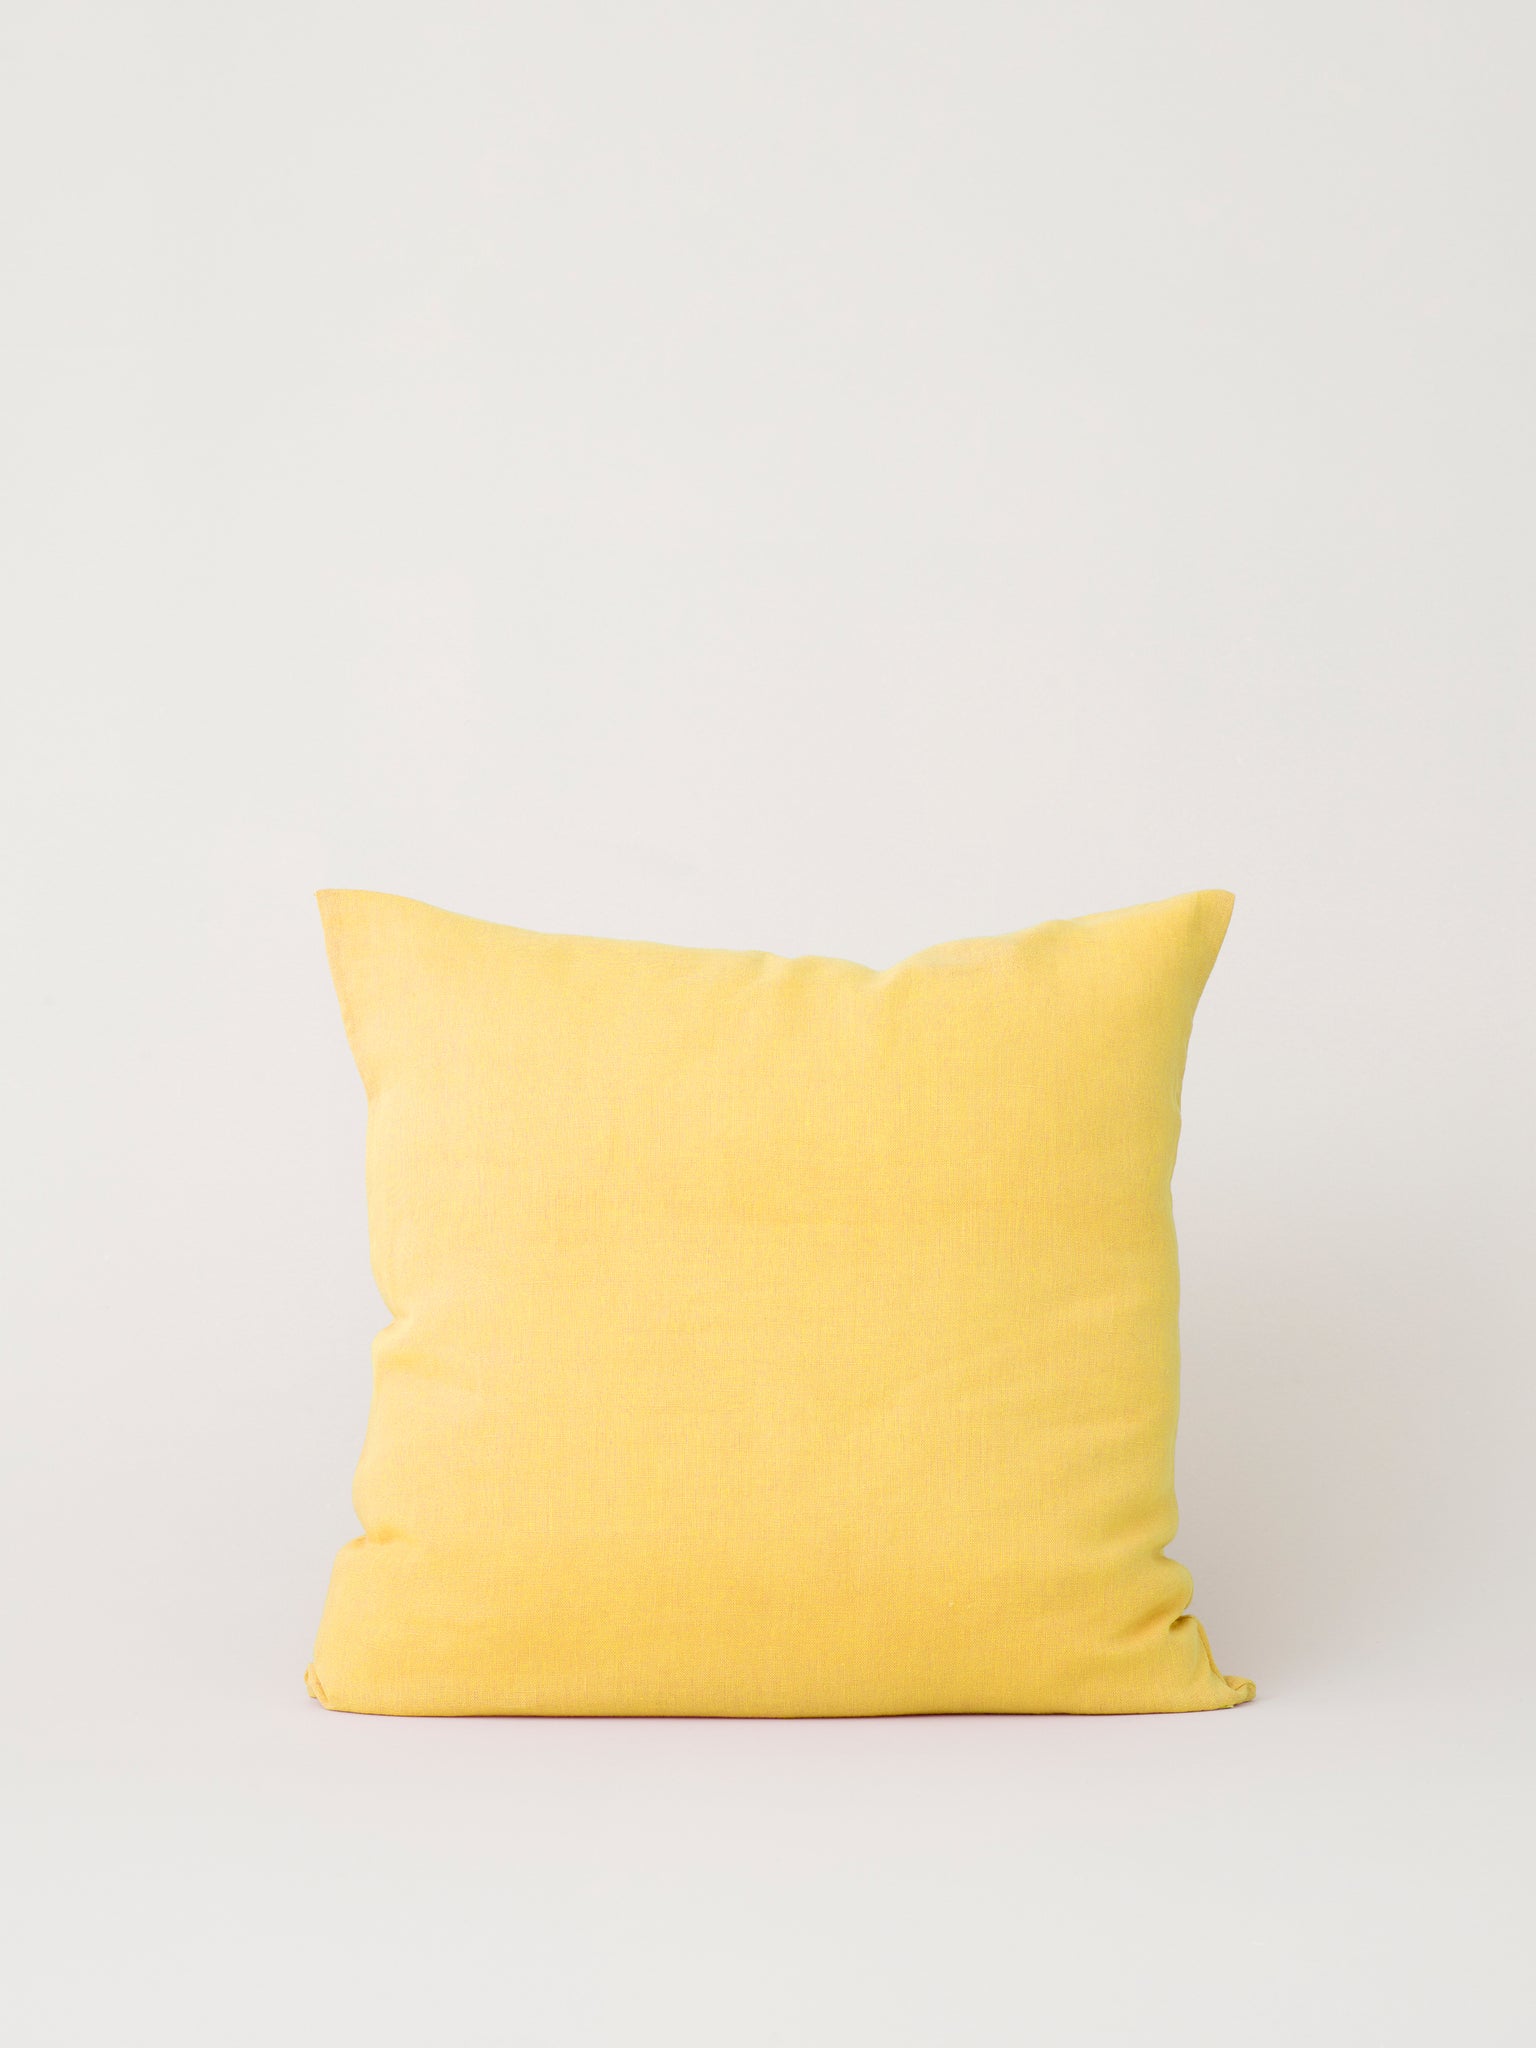 Stilleben Cushion Cover - 50 x 50 cm Cushion Cover Yellow